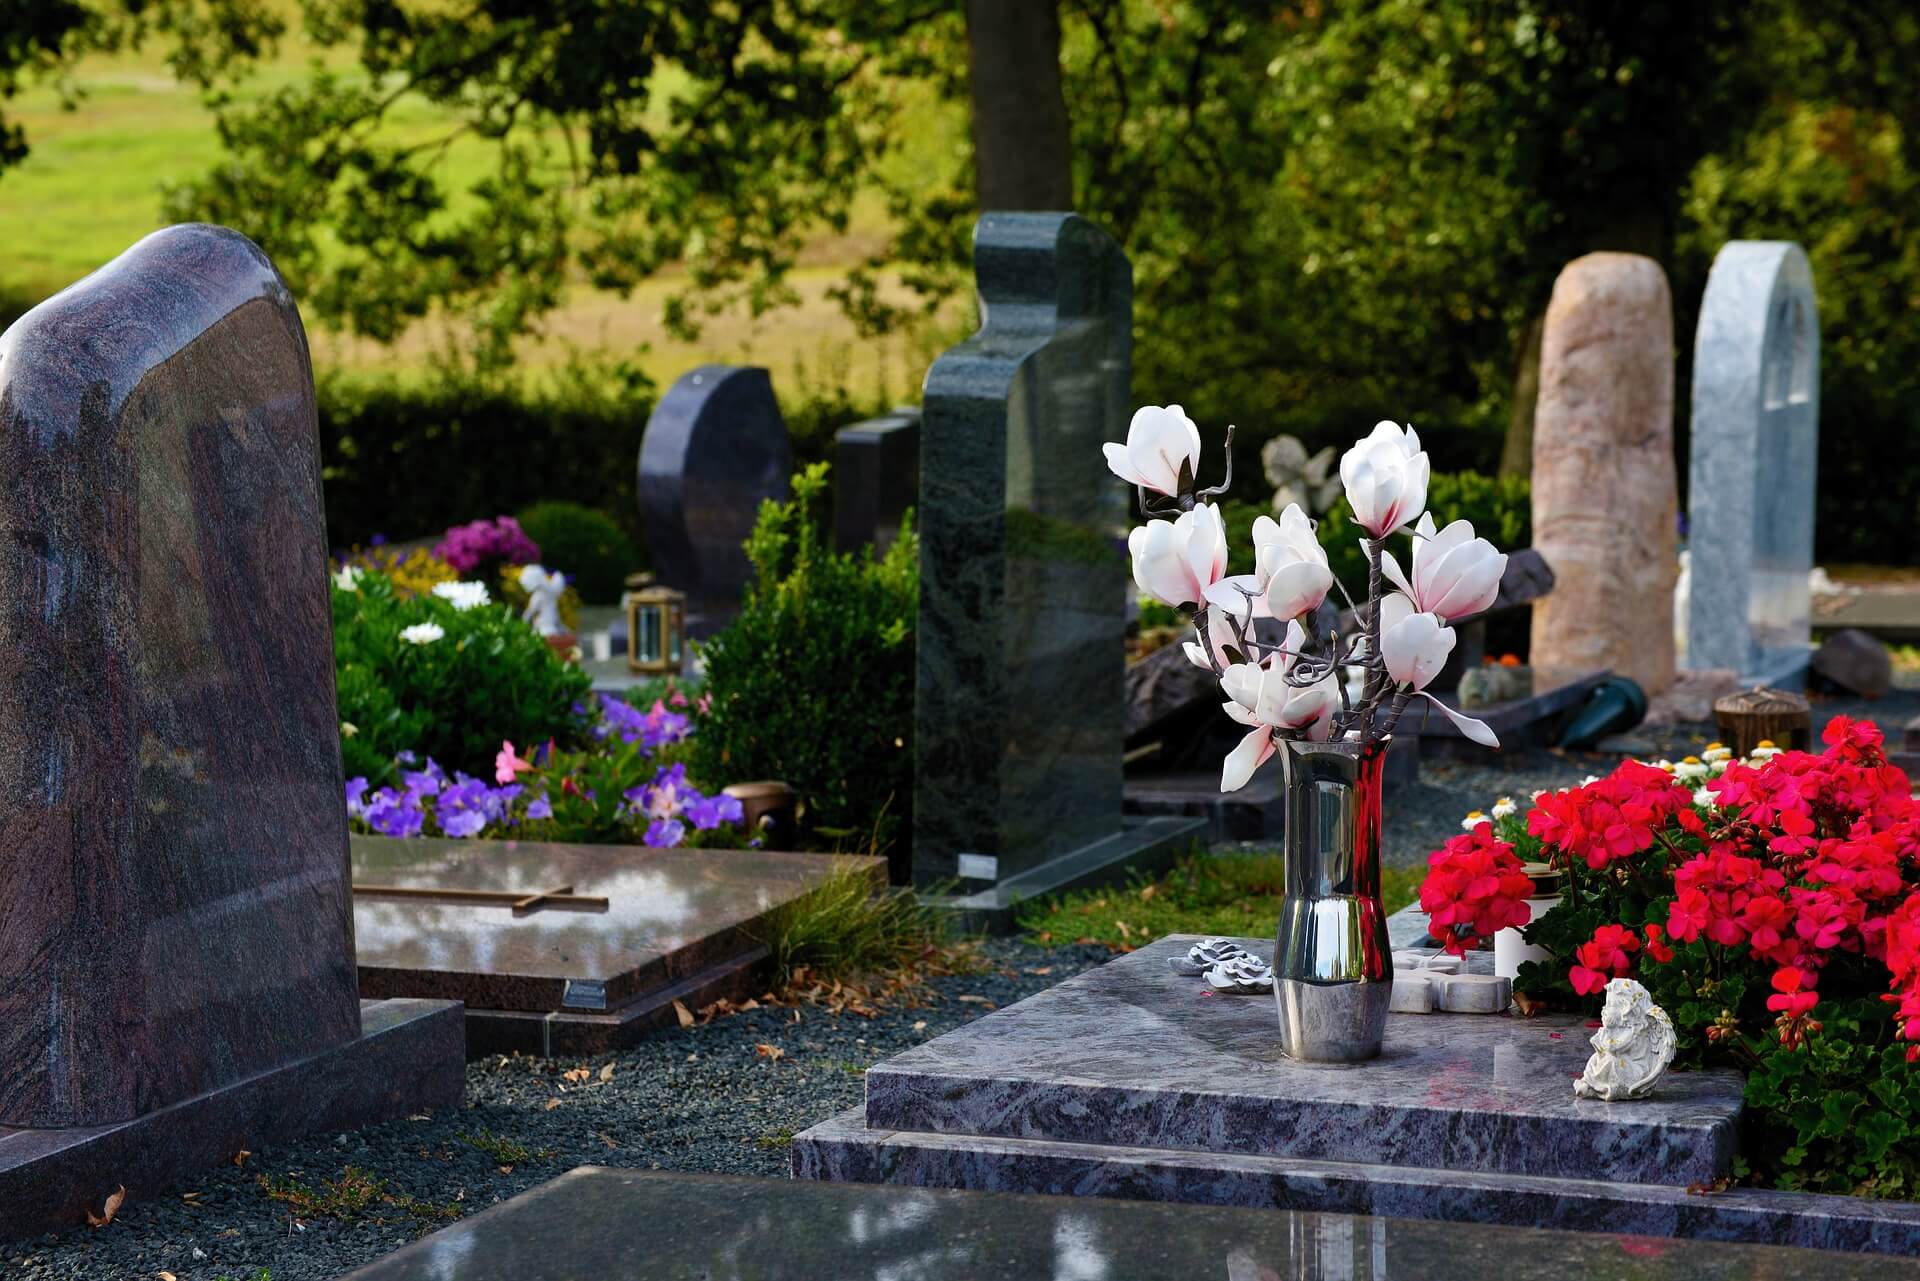 Cmentarna poczta kwiatowa, czyli duchowi babci na pewno spodoba si, e zapacie komu za przyniesienie kwiatw na jej grb